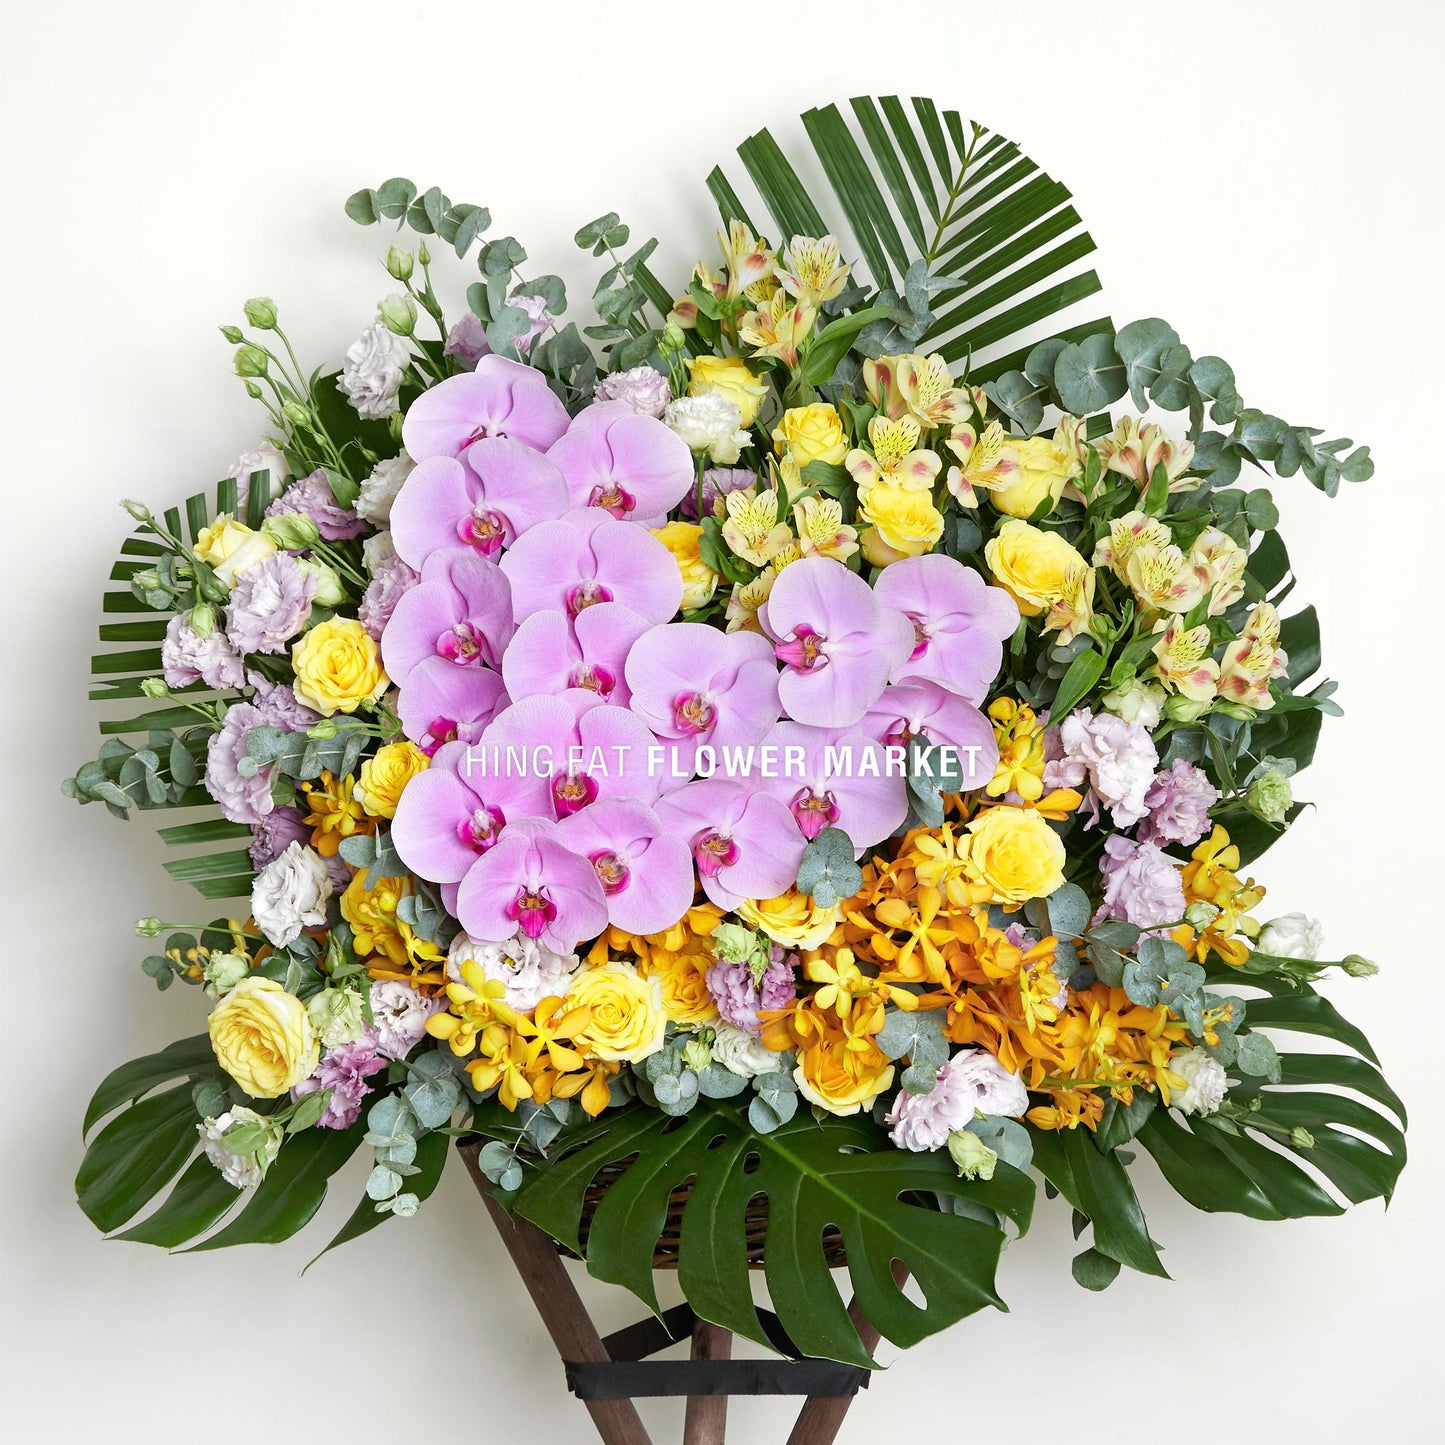 粉蝴蝶蘭黃玫瑰花籃 Pink orchid and yellow rose flower stand